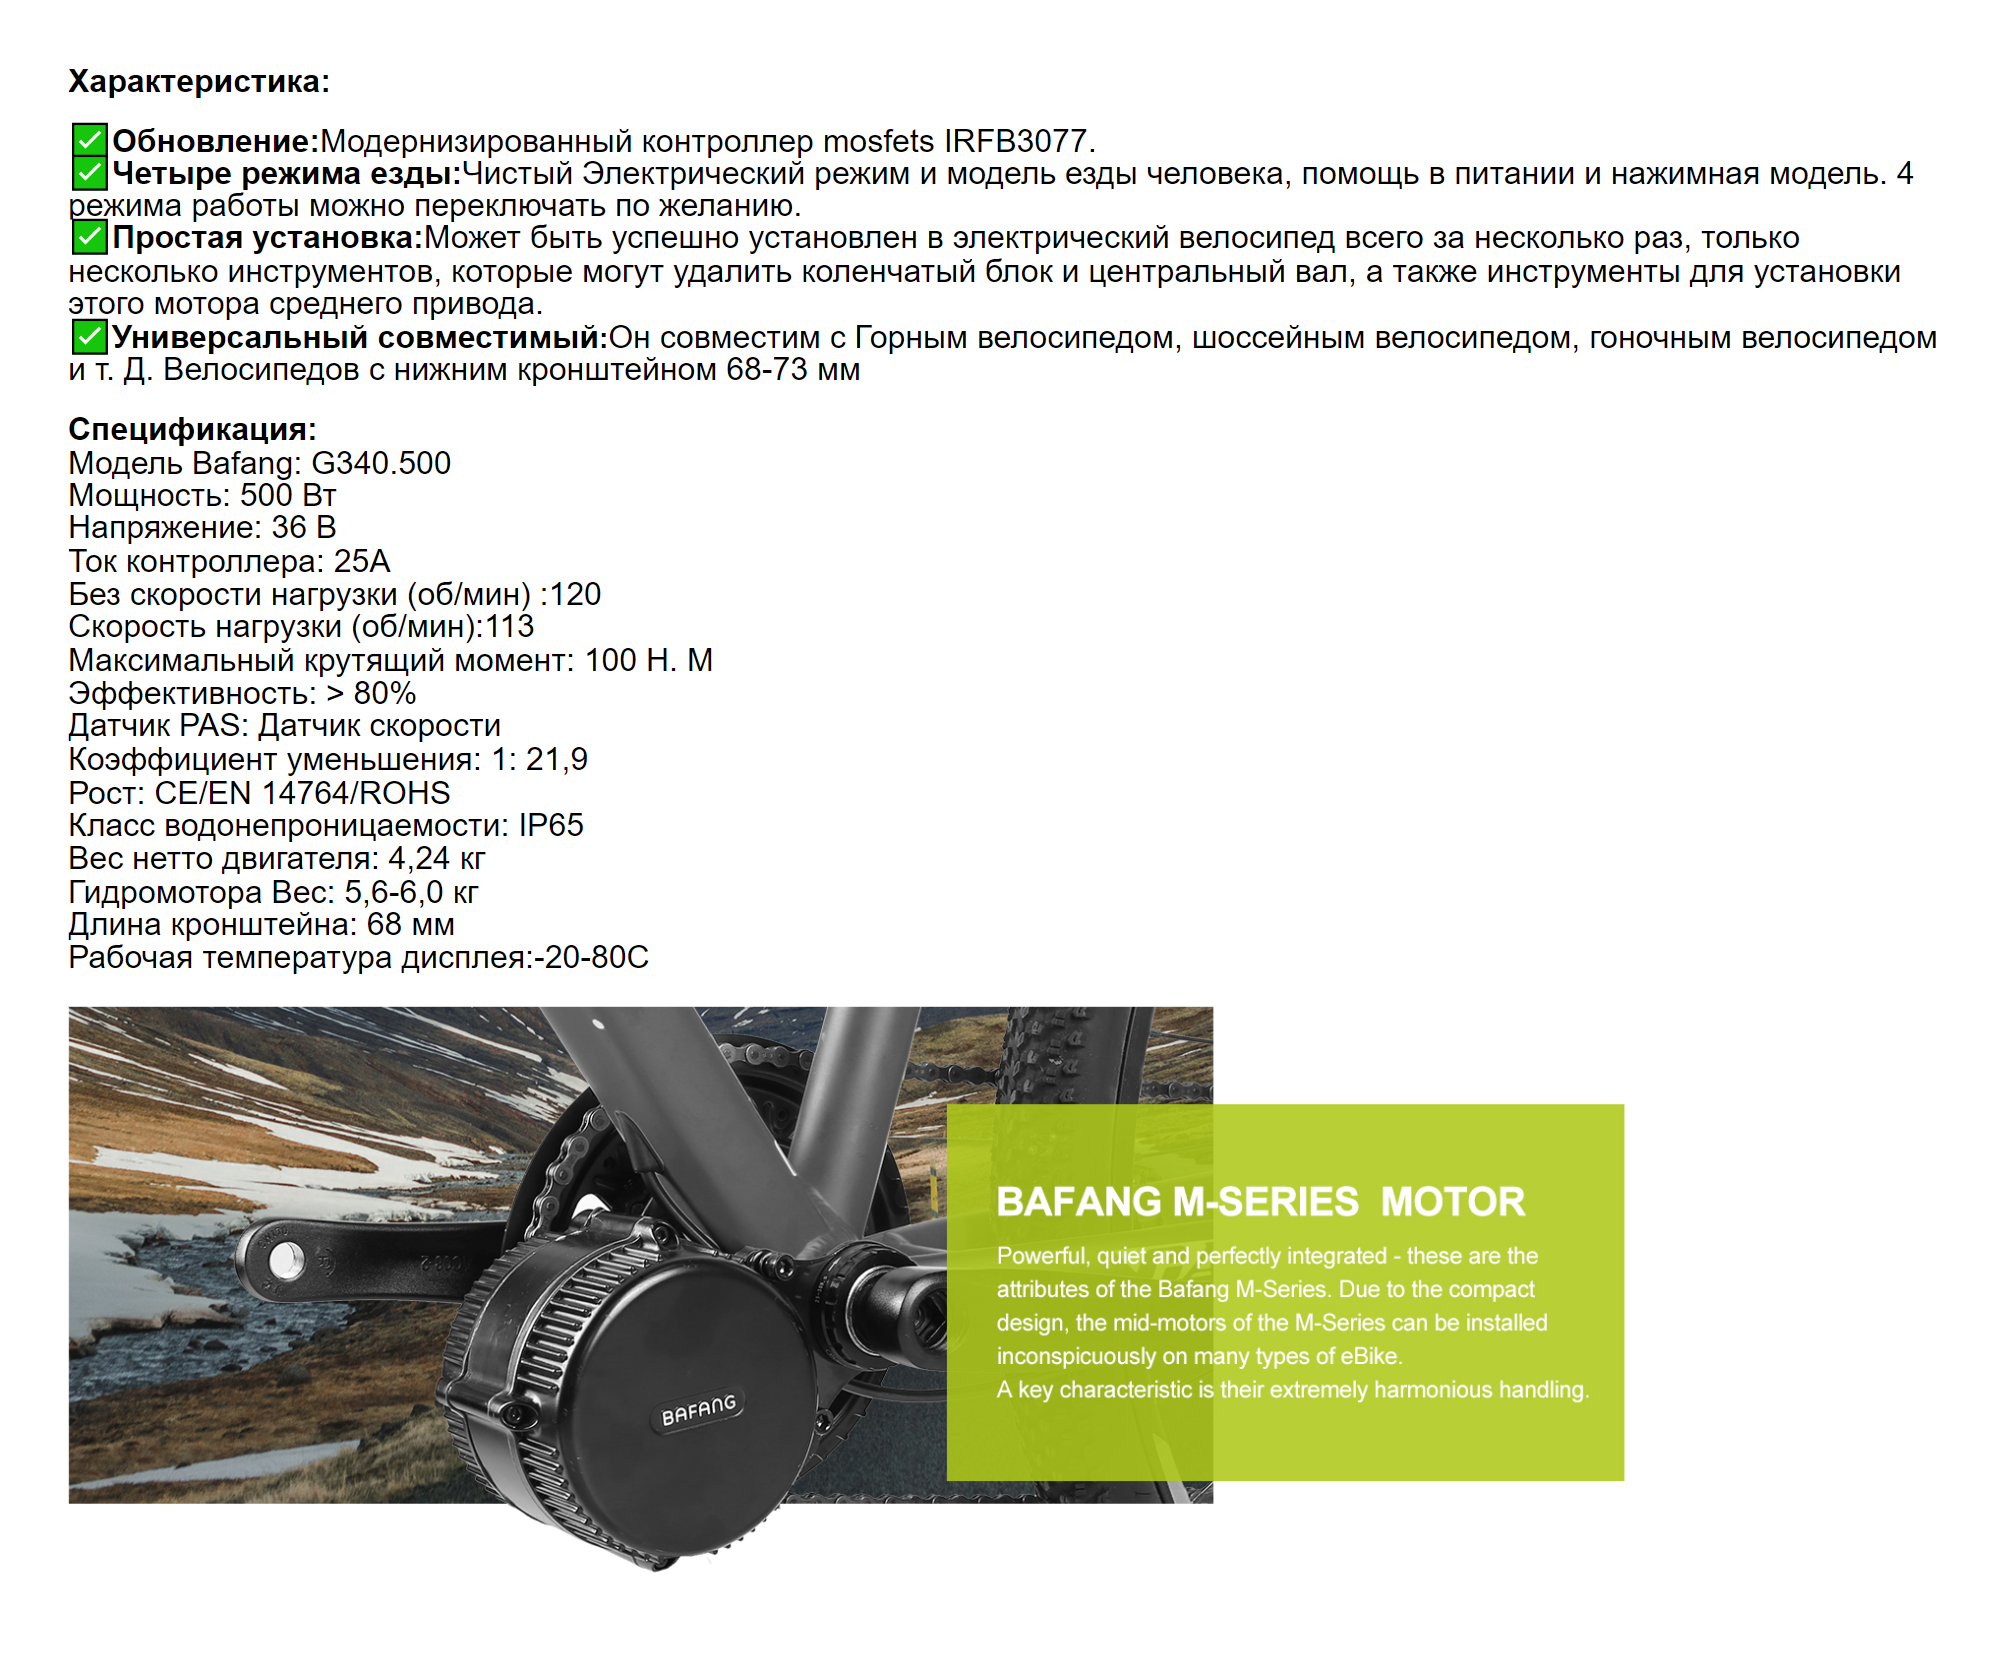 Электродвигатель для велосипеда. Продавец на «Алиэкспрессе» указал мощность — 500 Вт. Велосипед с таким двигателем не нужно ставить на учет. Источник: aliexpress.ru